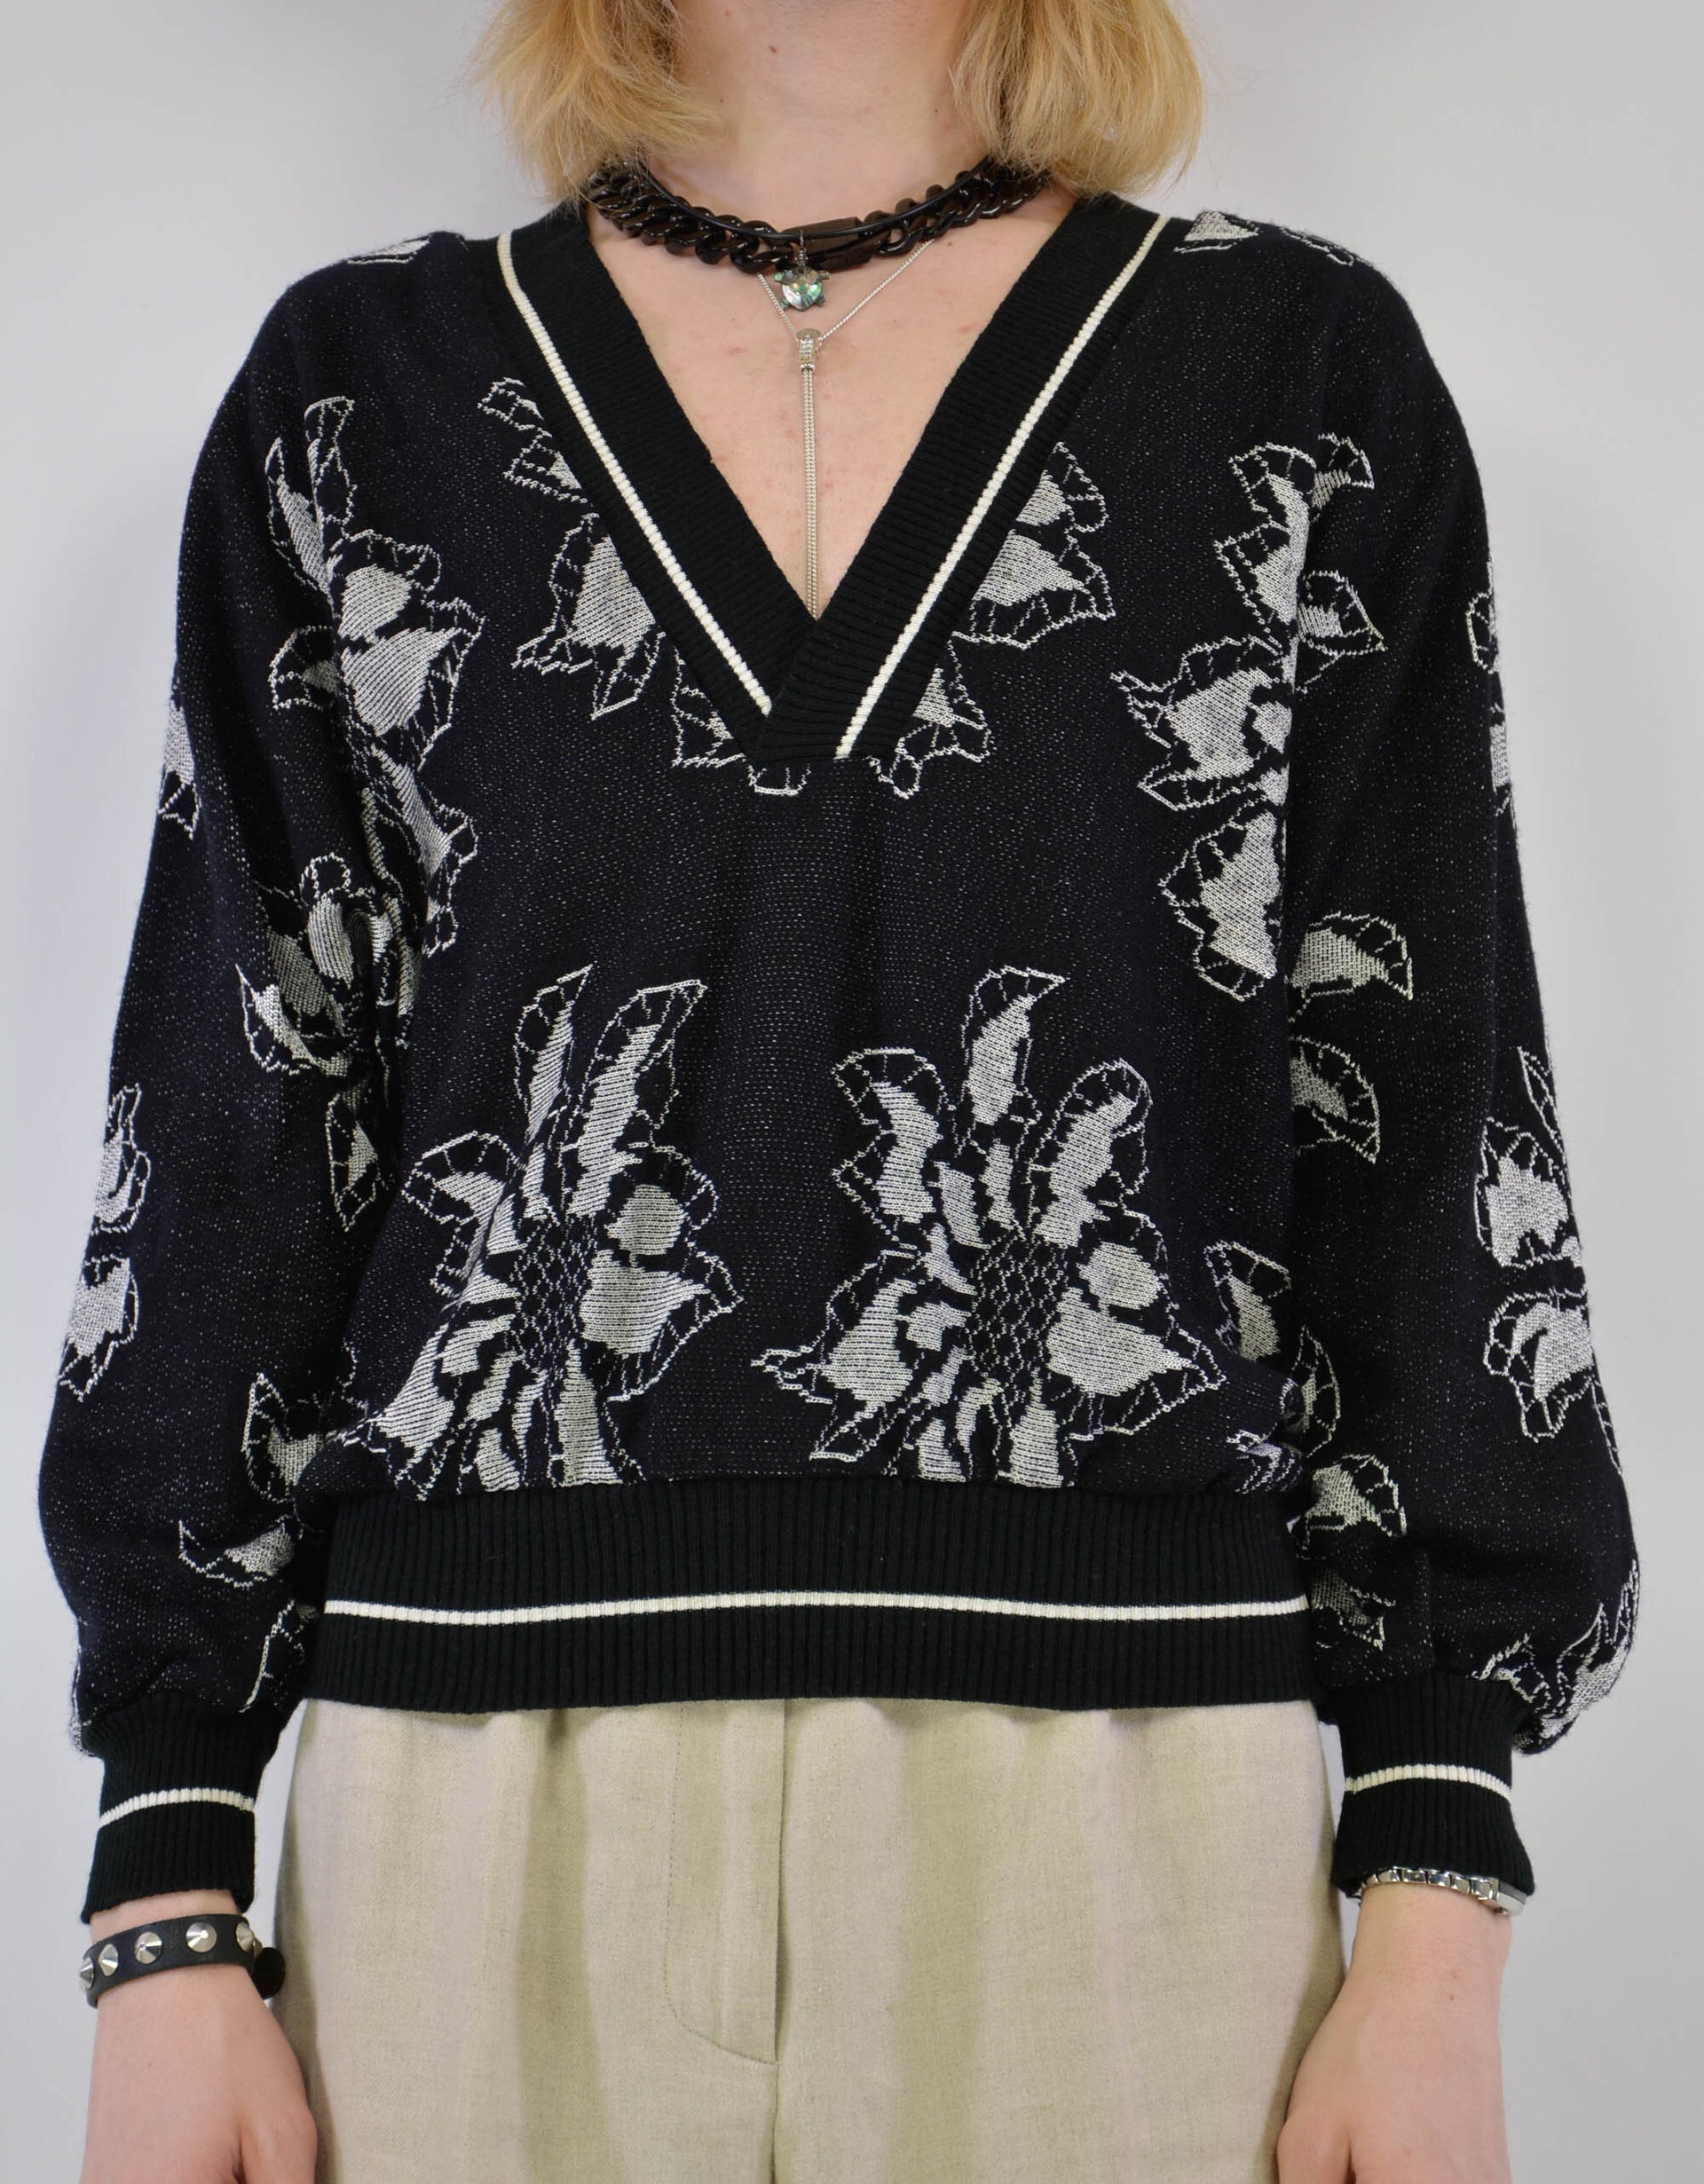 Flower knitwear sweater - PICKNWEIGHT - VINTAGE KILO STORE